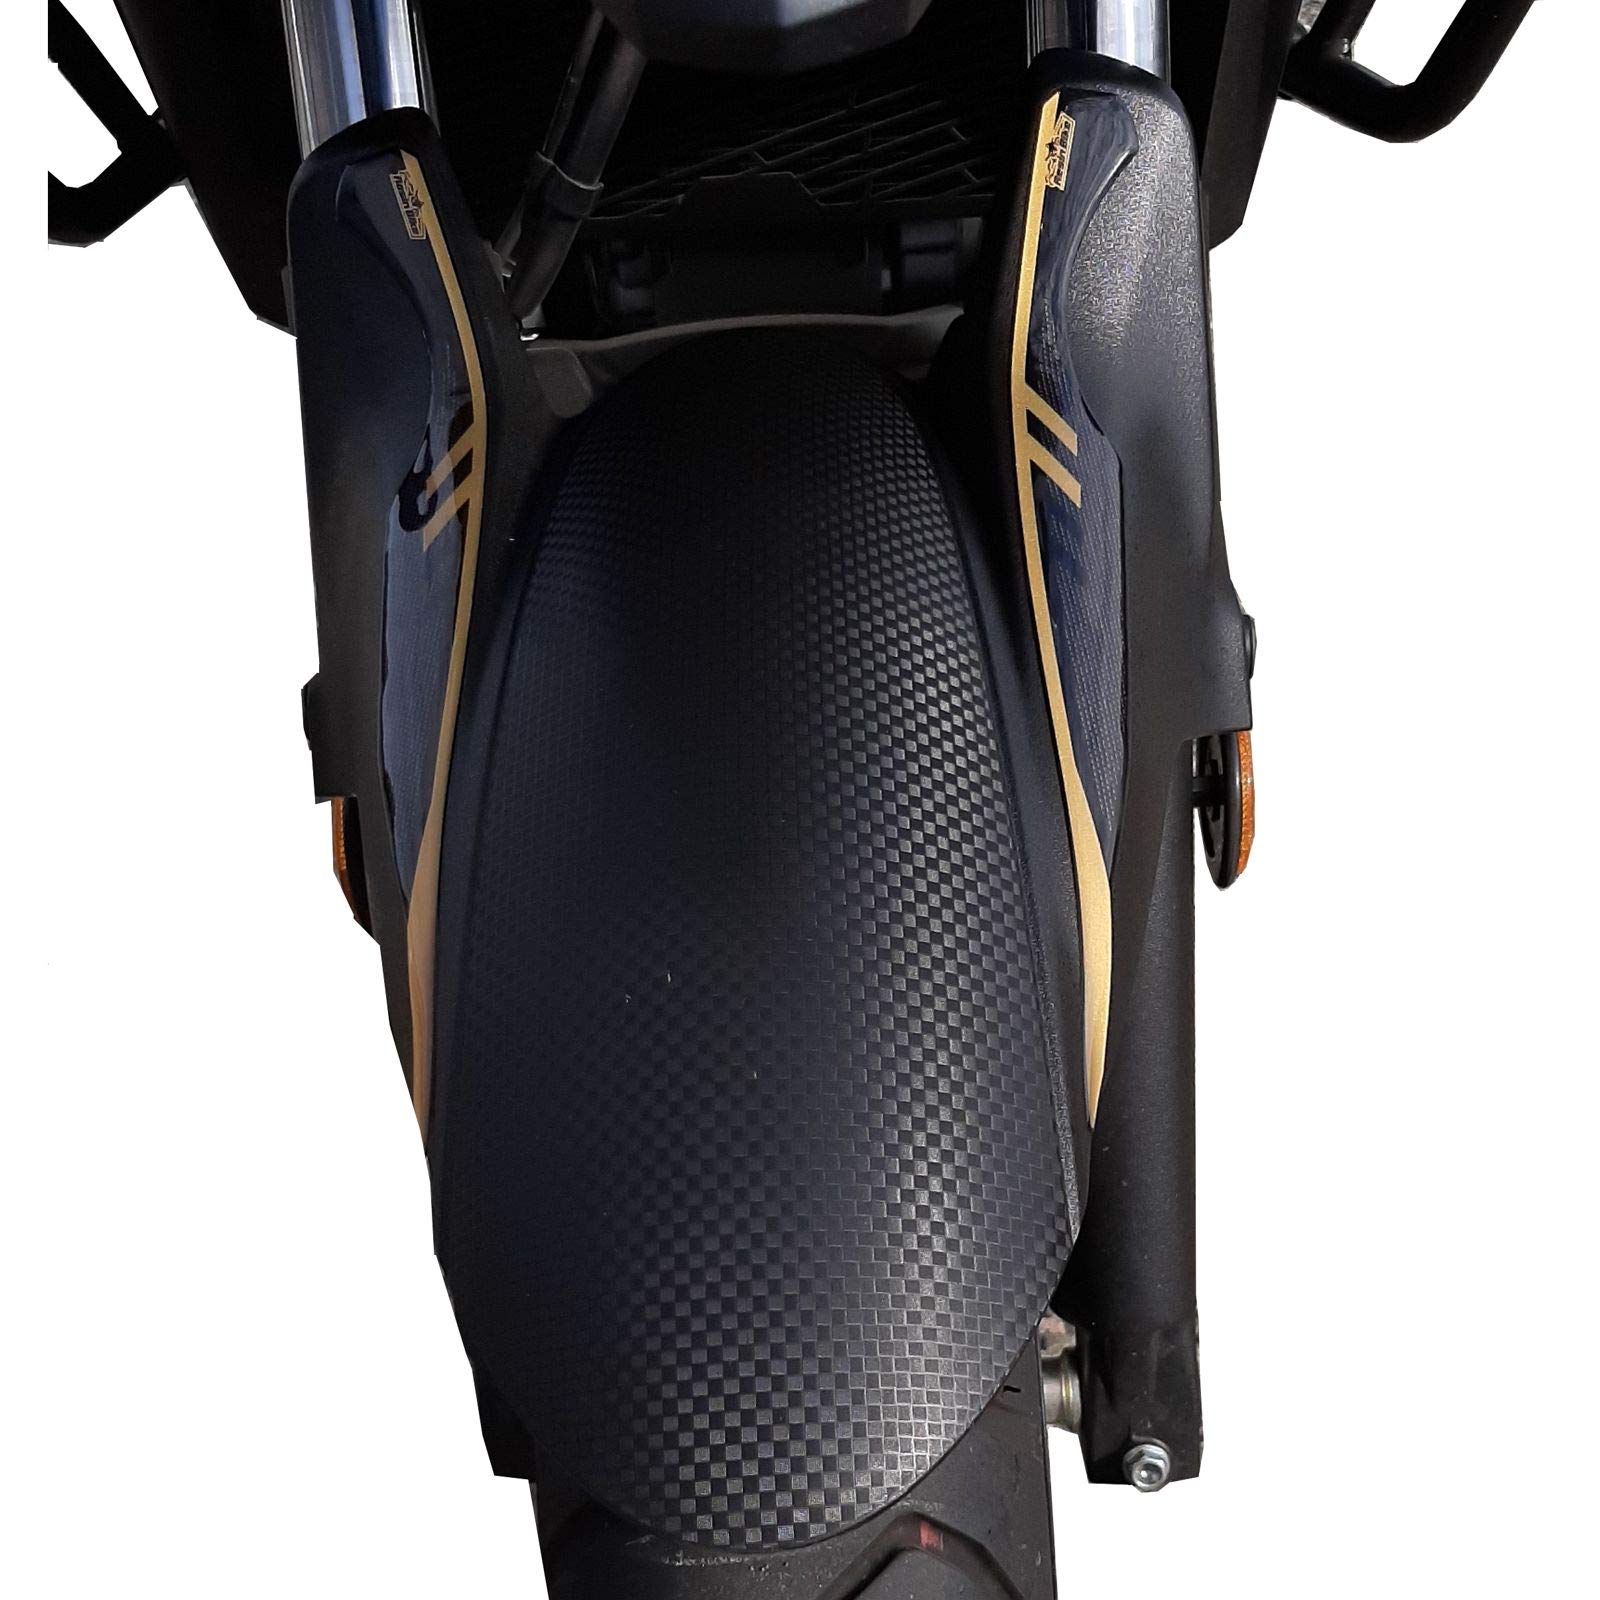 Resin Bike Aufkleber für Motorrad Kompatibel mit Suzuki V-Strom 650 XT ABS 2020 2021. Kotflügelschutz vor Stößen und Kratzern. 3D-Harzklebstoff - Stickers - Made in Italy von Resin Bike